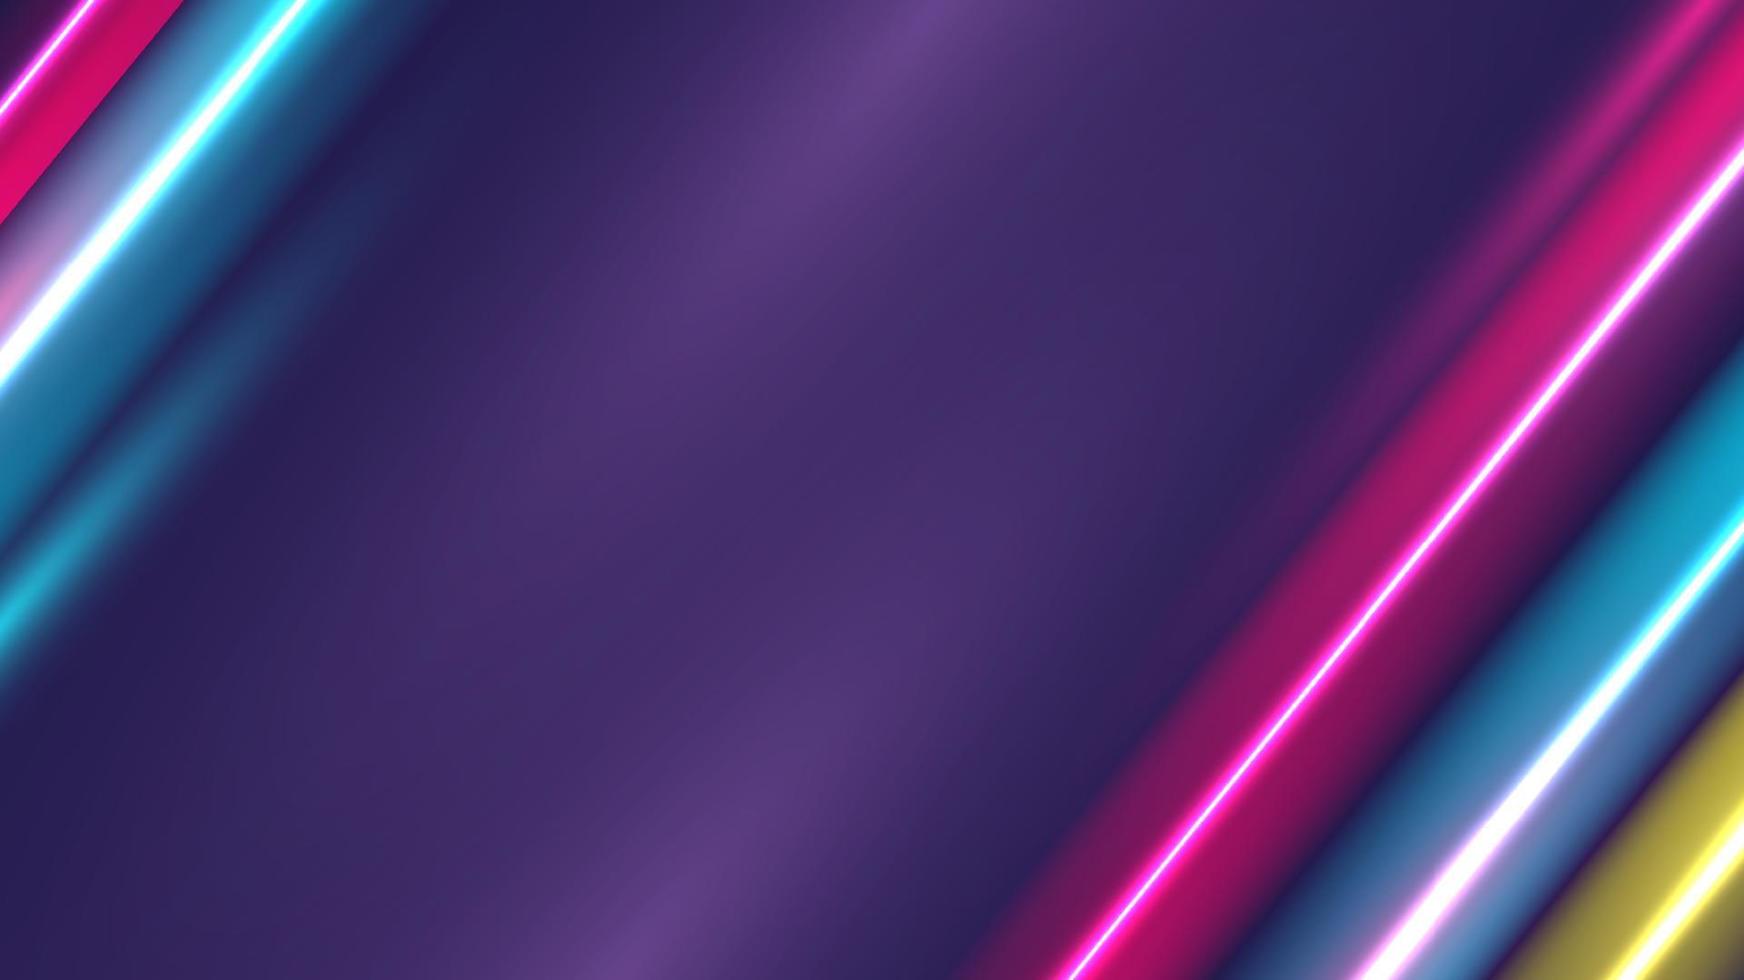 neonblaue und rosafarbene farben, die diagonale linien schablonenhintergrund beleuchten vektor